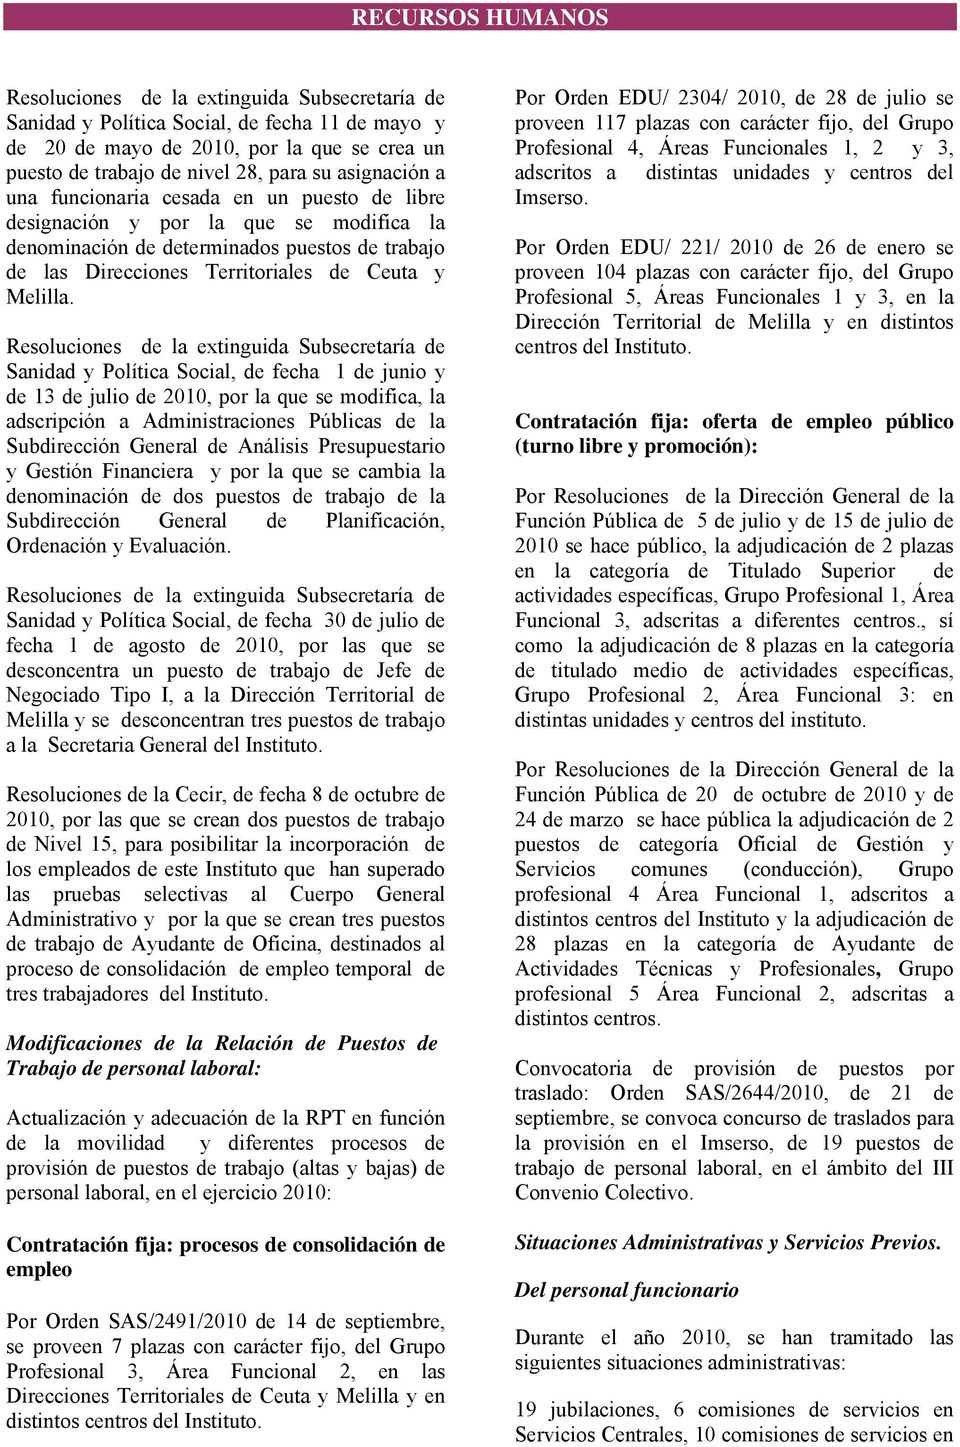 Resoluciones de la extinguida Subsecretaría de Sanidad y Política Social, de fecha 1 de junio y de 13 de julio de 2010, por la que se modifica, la adscripción a Administraciones Públicas de la